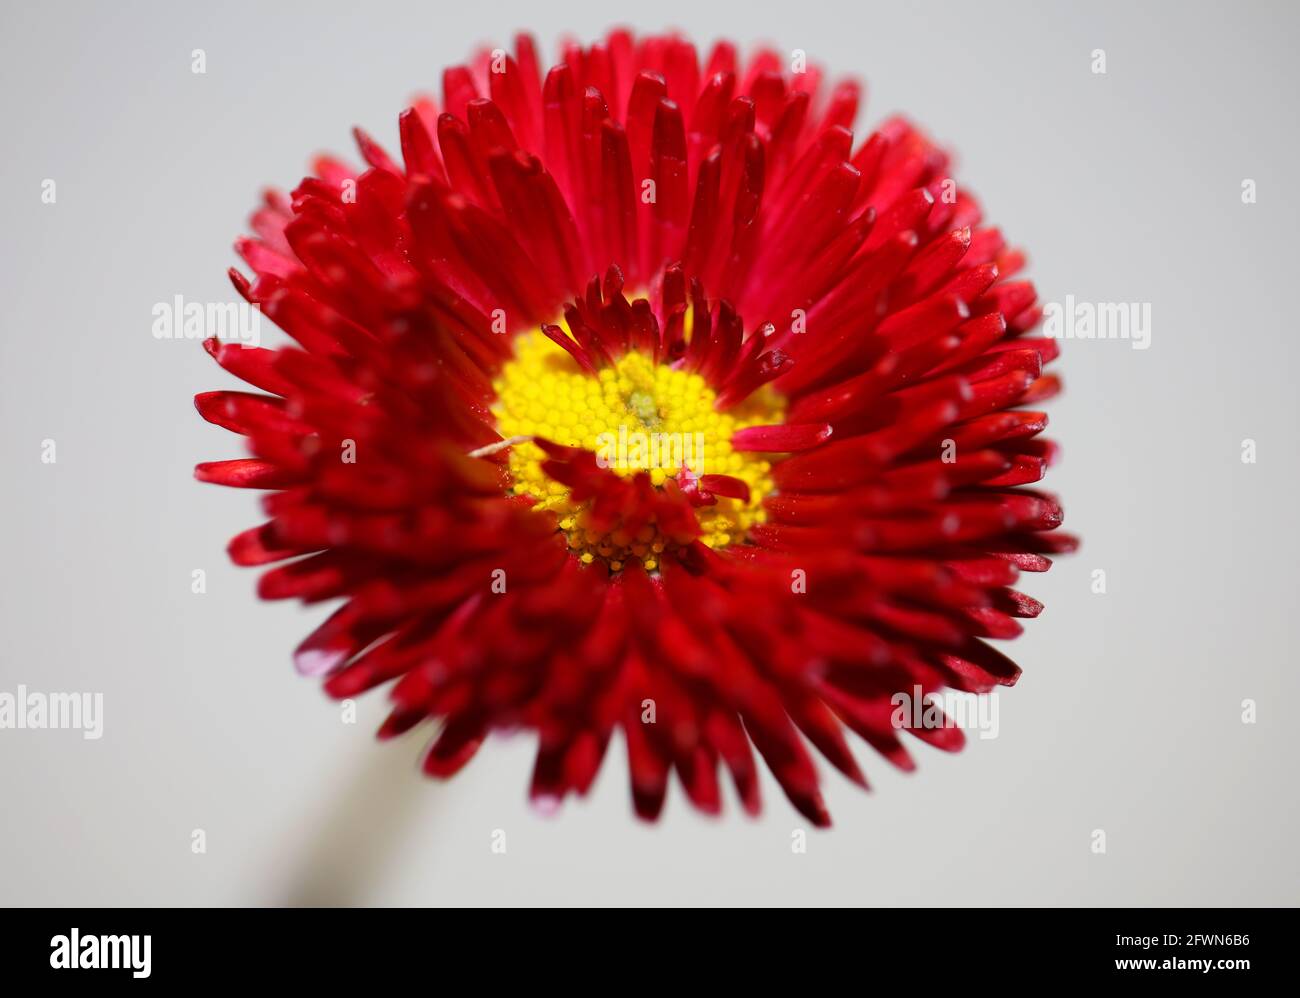 Rote Blume Blüte Nahaufnahme Bellis perennis L. Familie compositae moderner Hintergrund hohe Qualität großen Druck Stockfoto